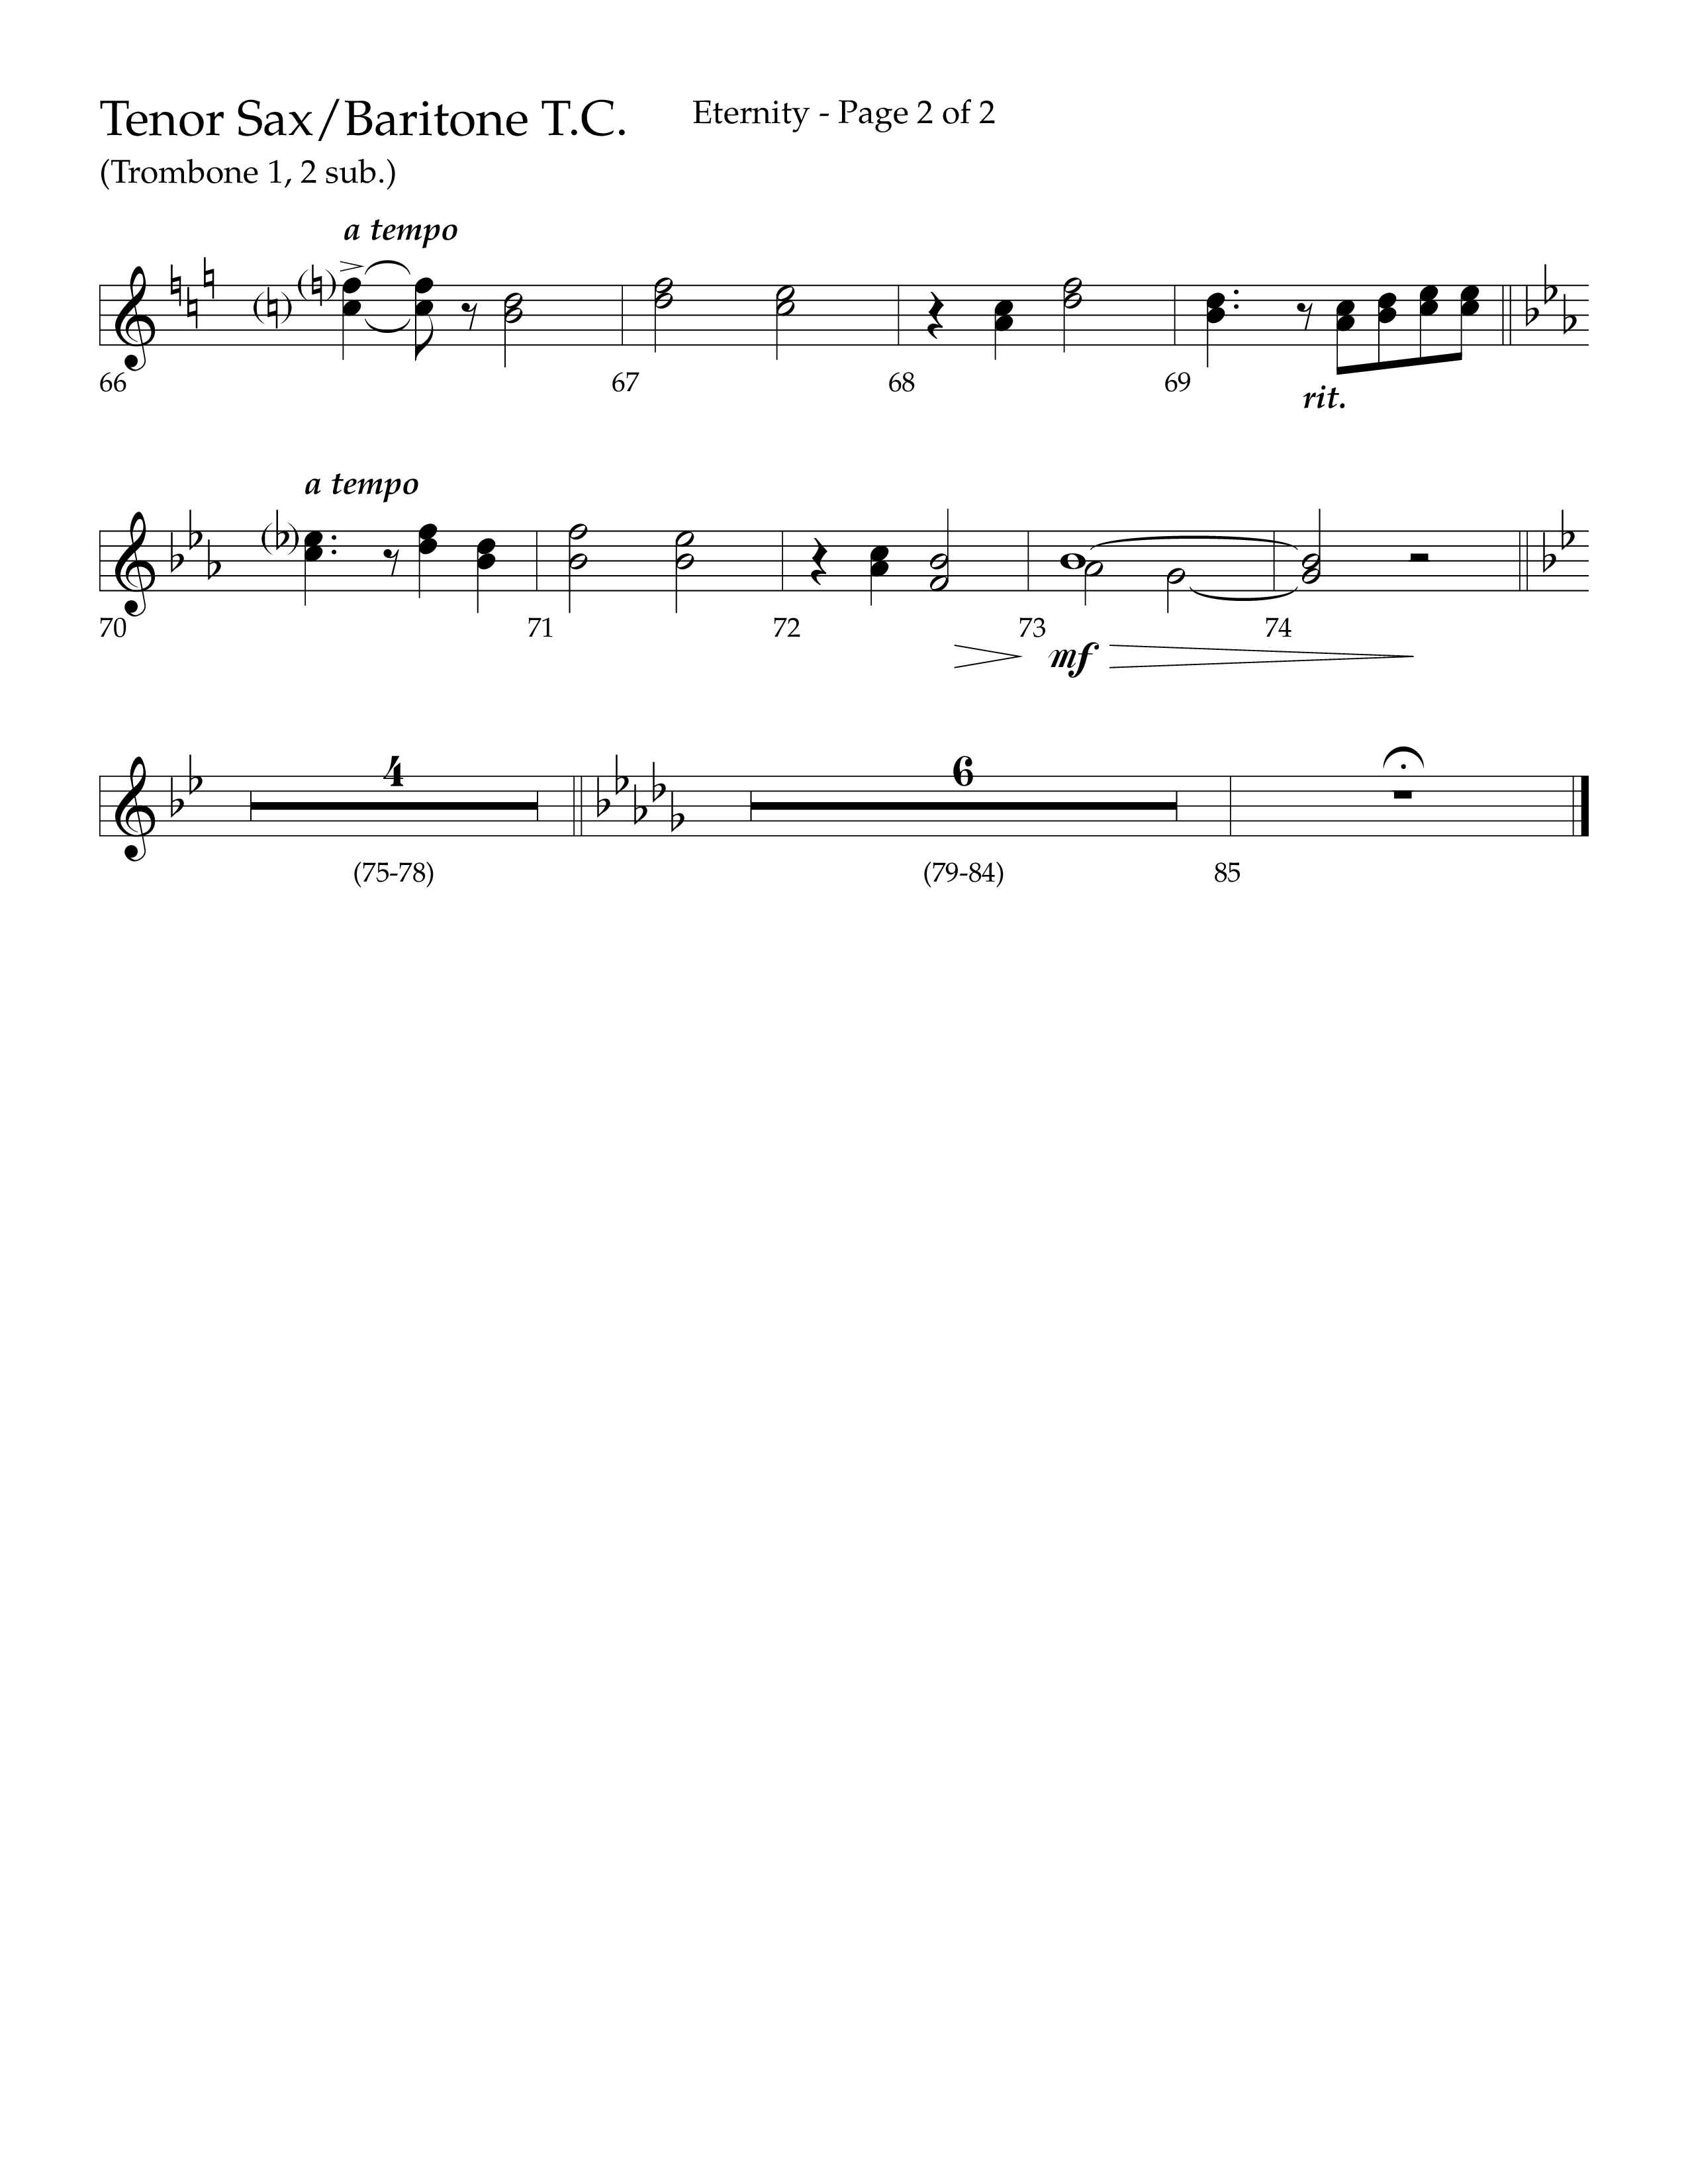 Eternity (Choral Anthem SATB) Tenor Sax/Baritone T.C. (Lifeway Choral / Arr. Bradley Knight)